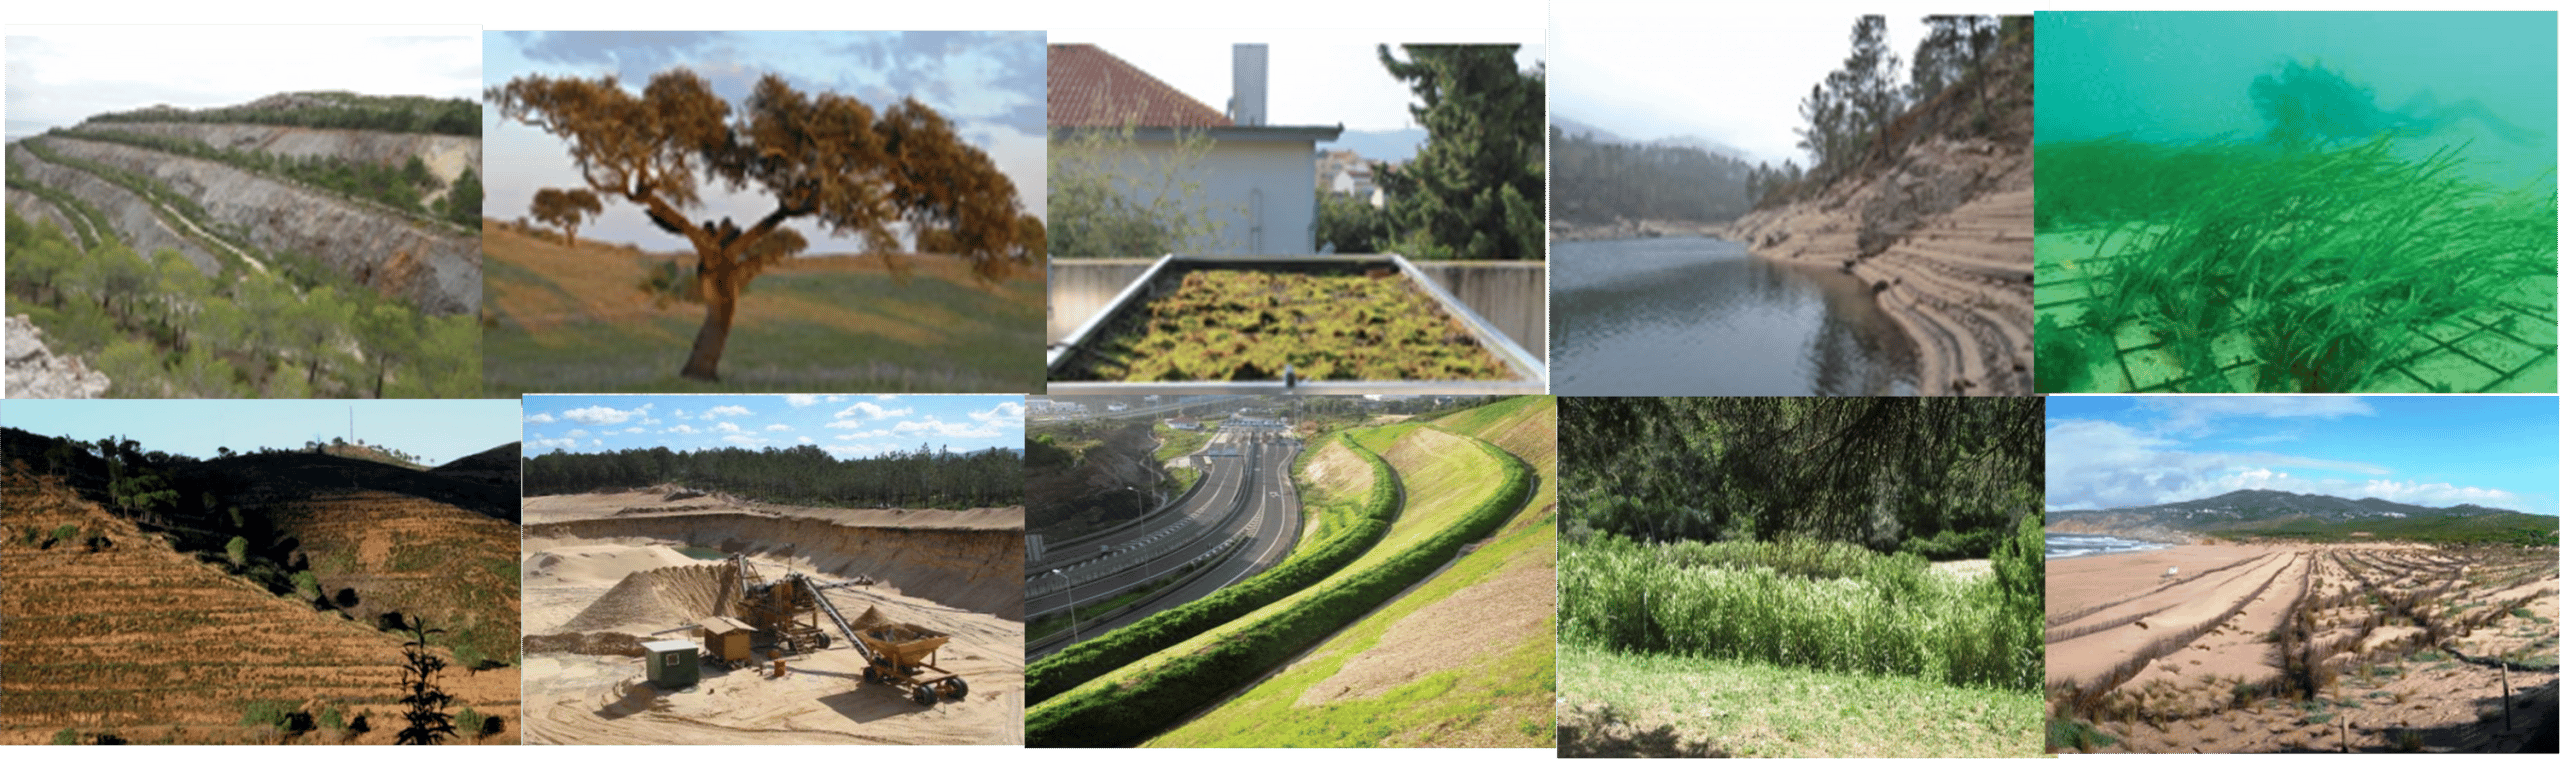 A recuperação de ecossistemas no contexto português